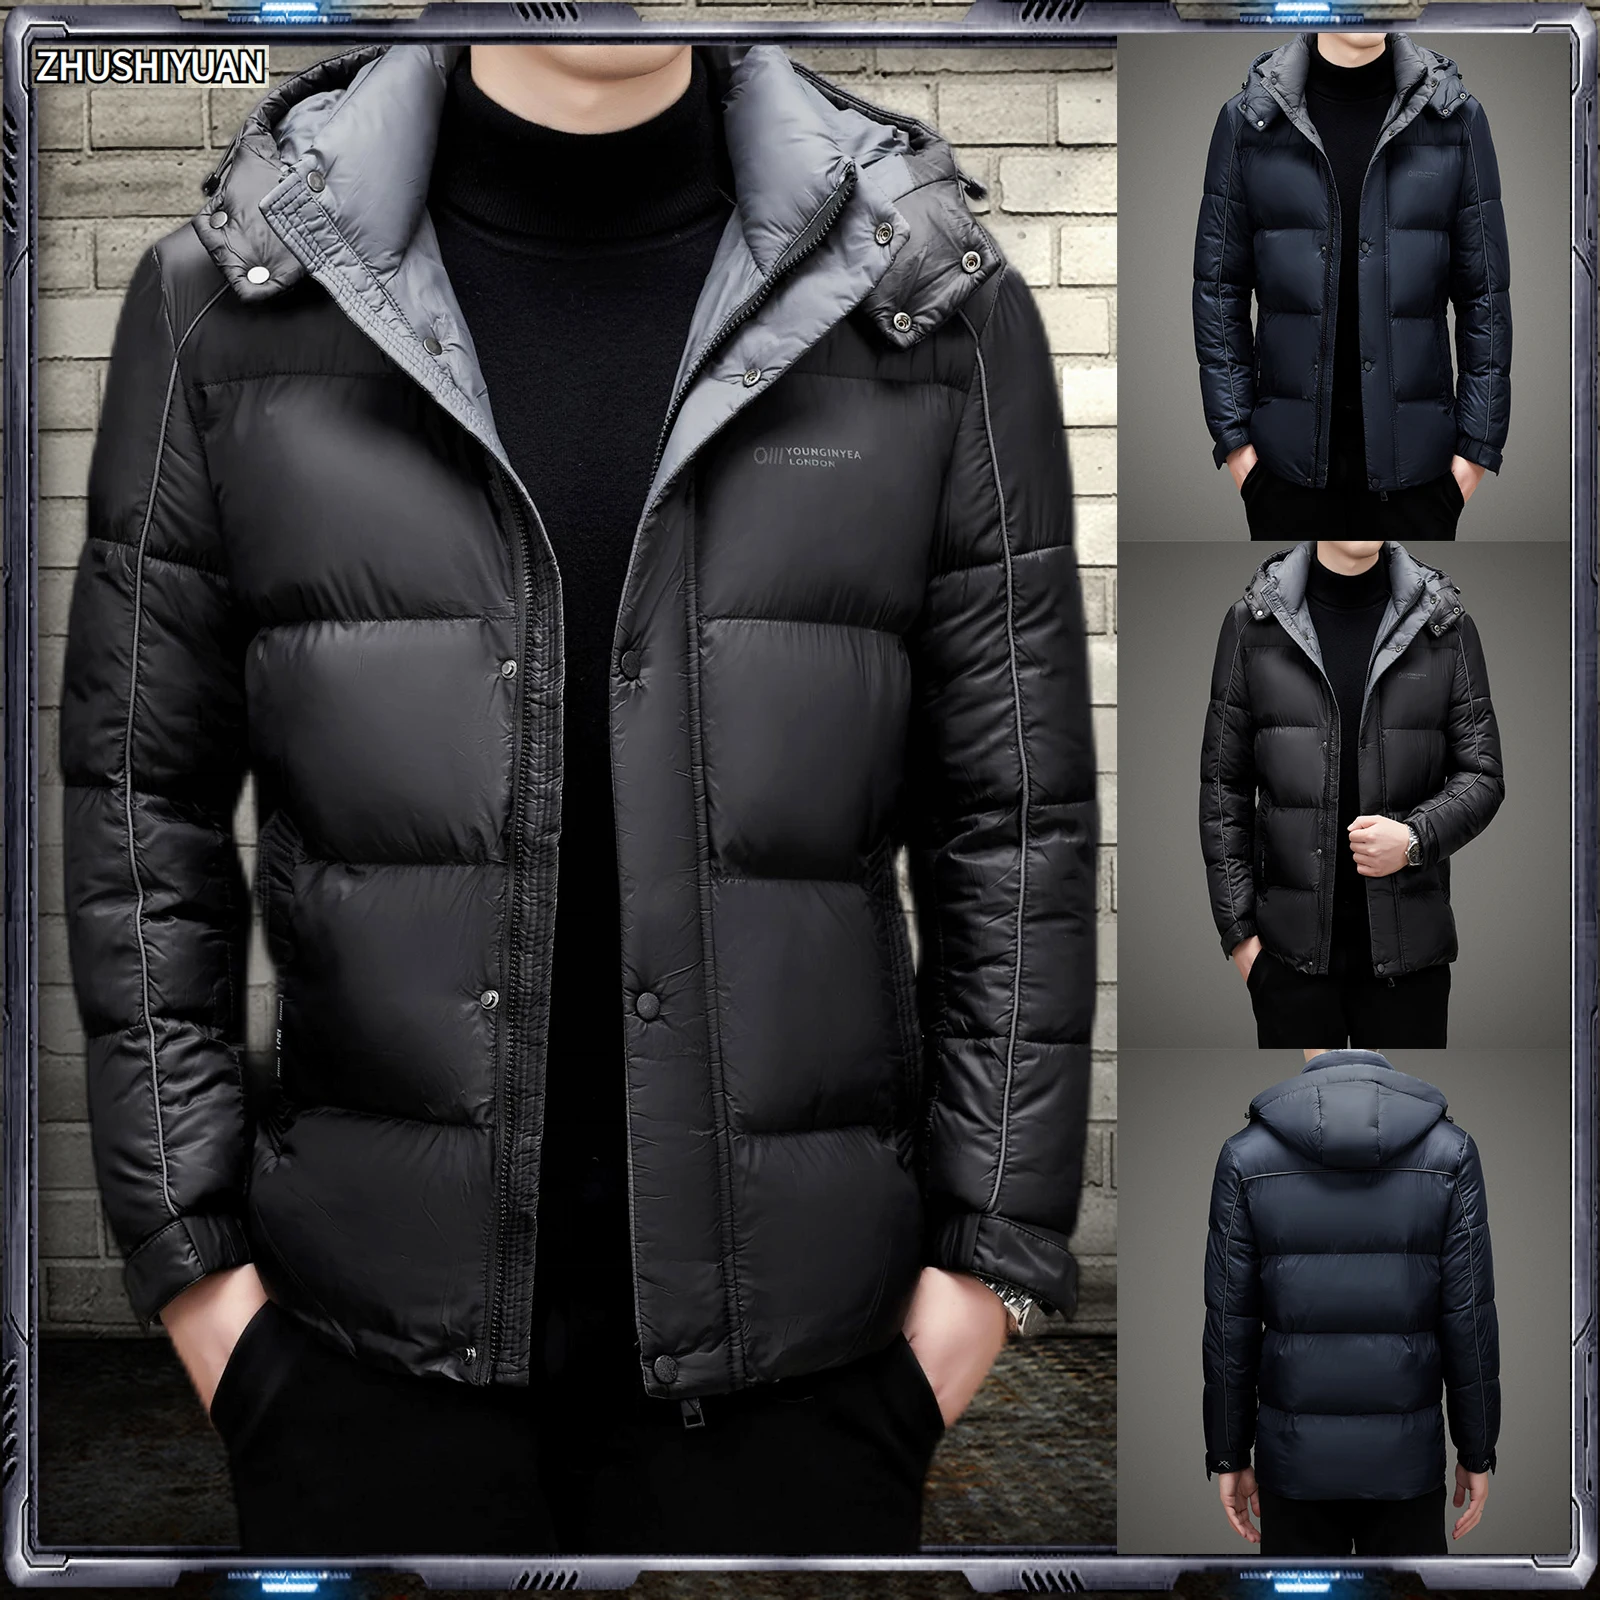 Winter Jacket Men Parkas Fashion Hooded Thicken Warm Coat Jackets Vestes Manteaux Ceketler Doudoune Homme Jaquetas Ropa Hombre